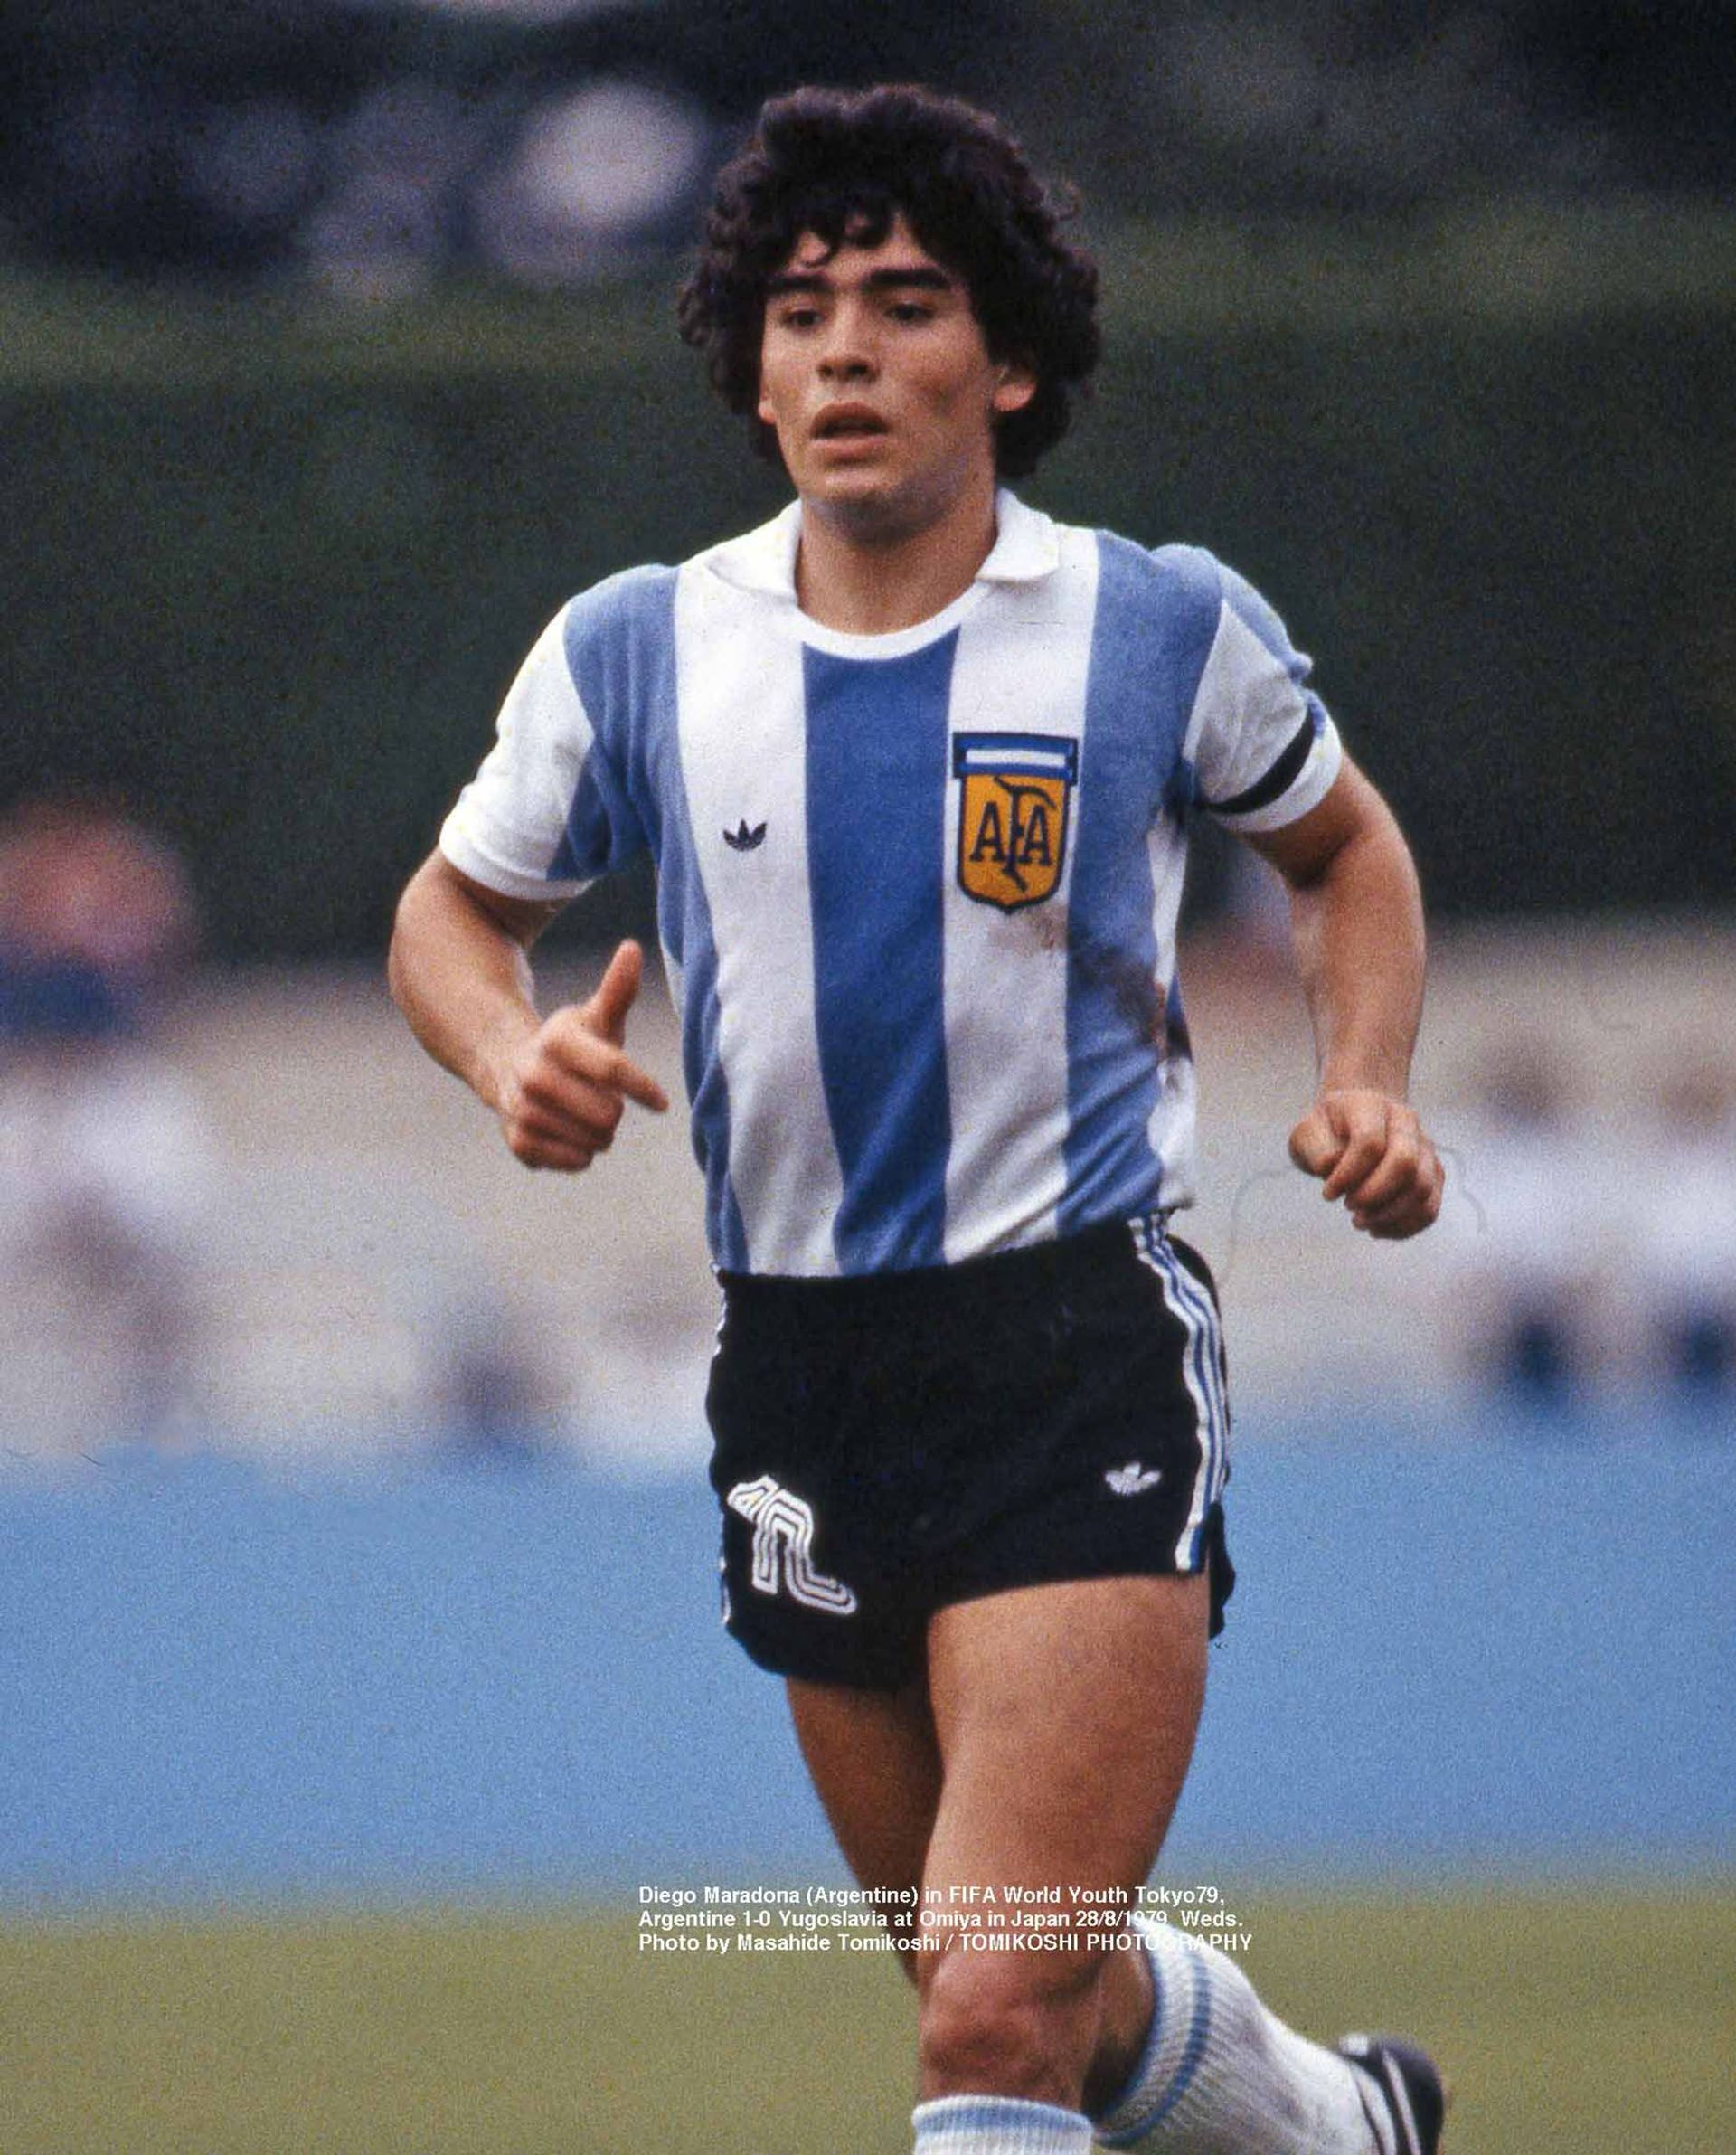 Diego Maradona en el mundial juvenil de 1979 (Masahide Tomikoshi)